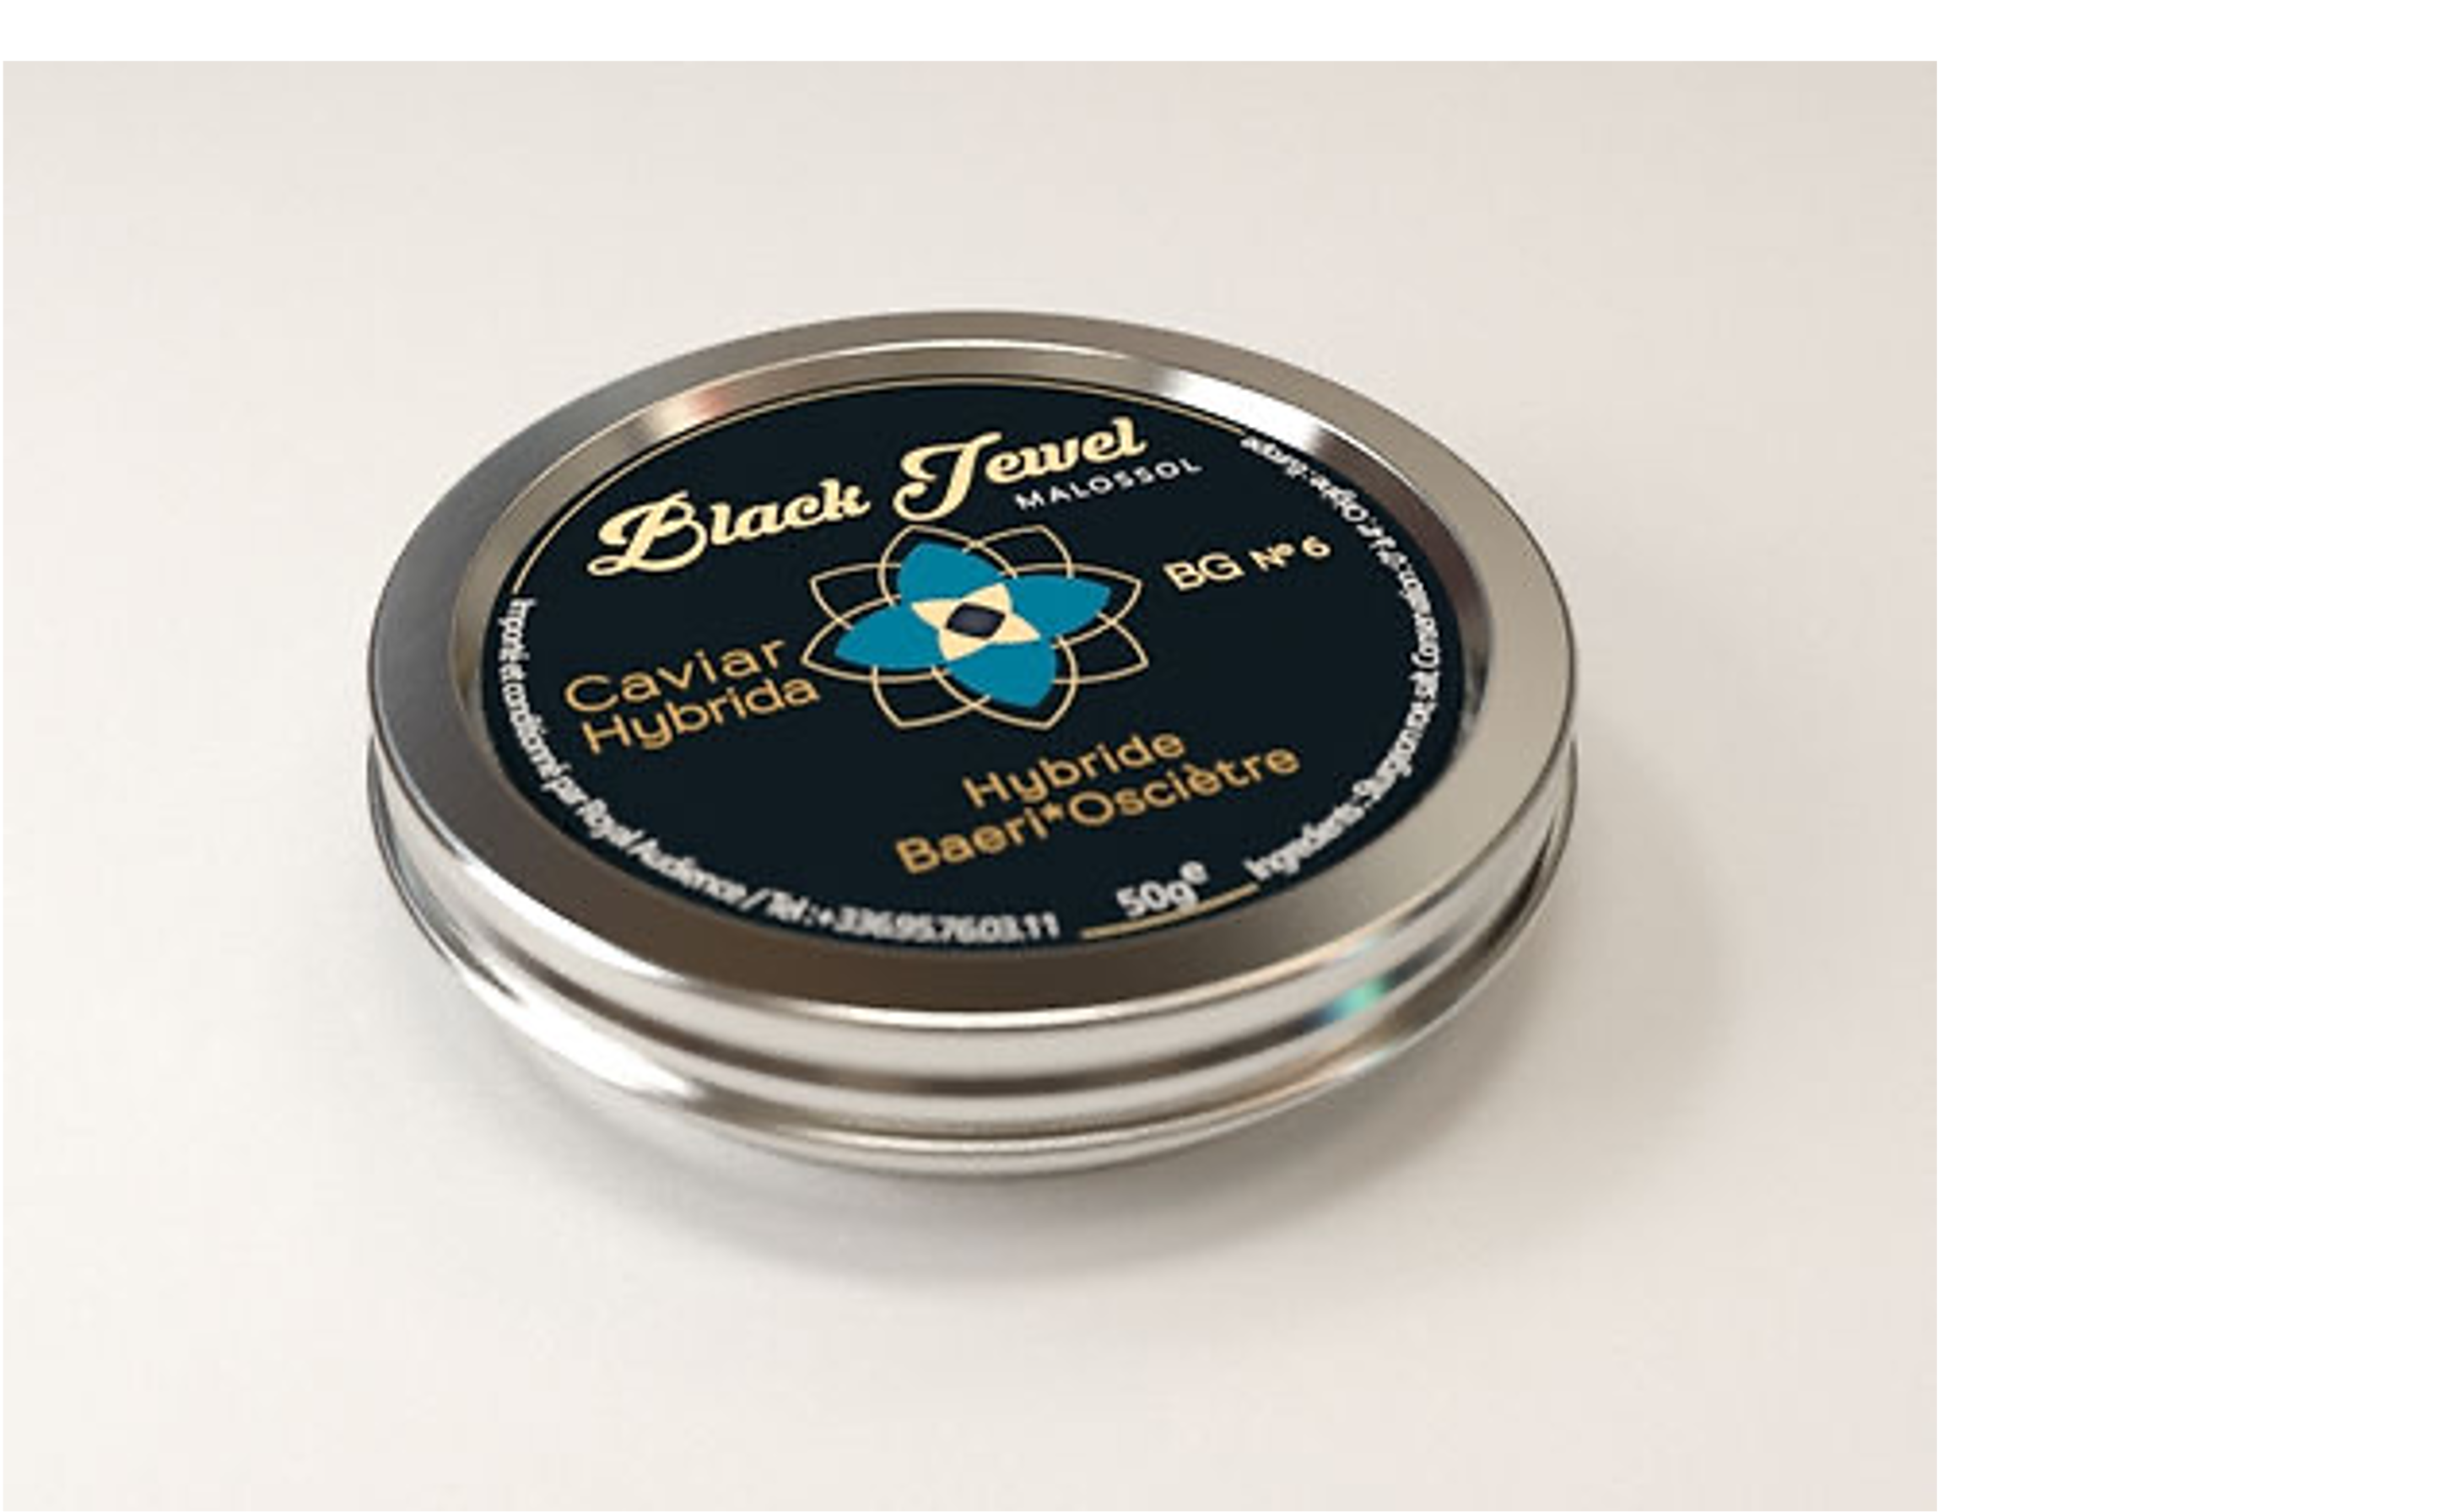 Black Jewel Caviar